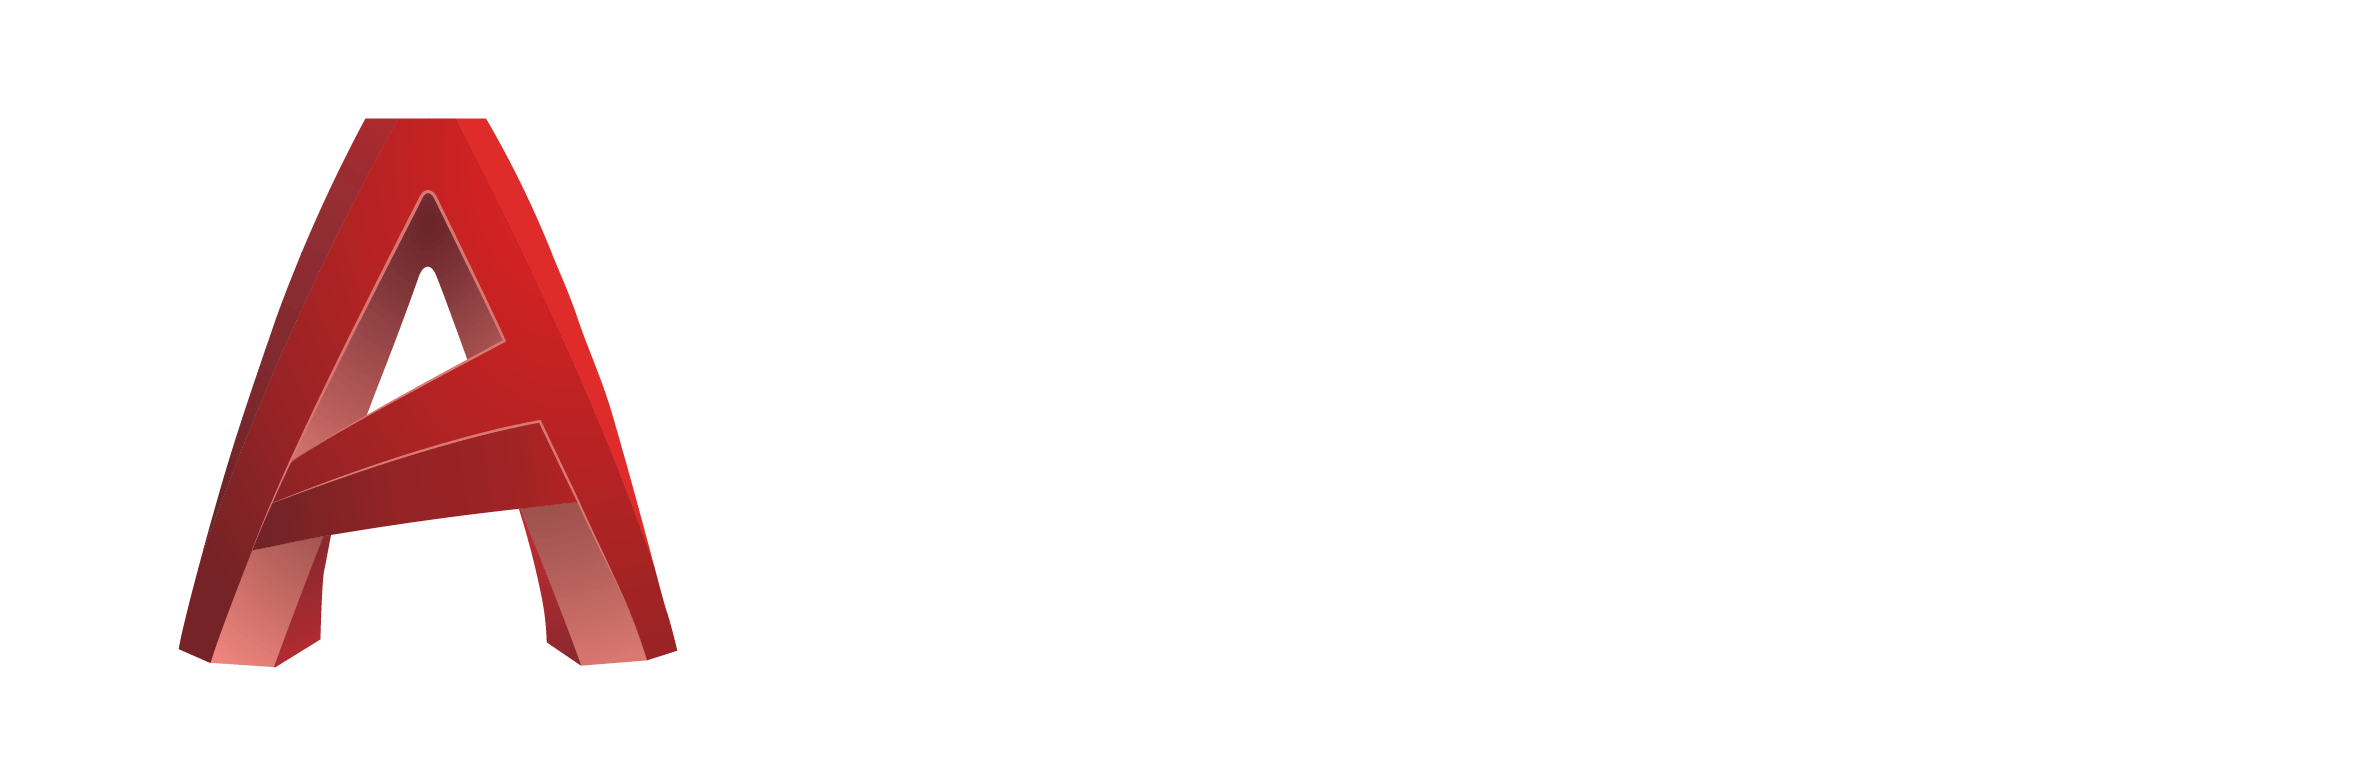 AUTOCAD-3D